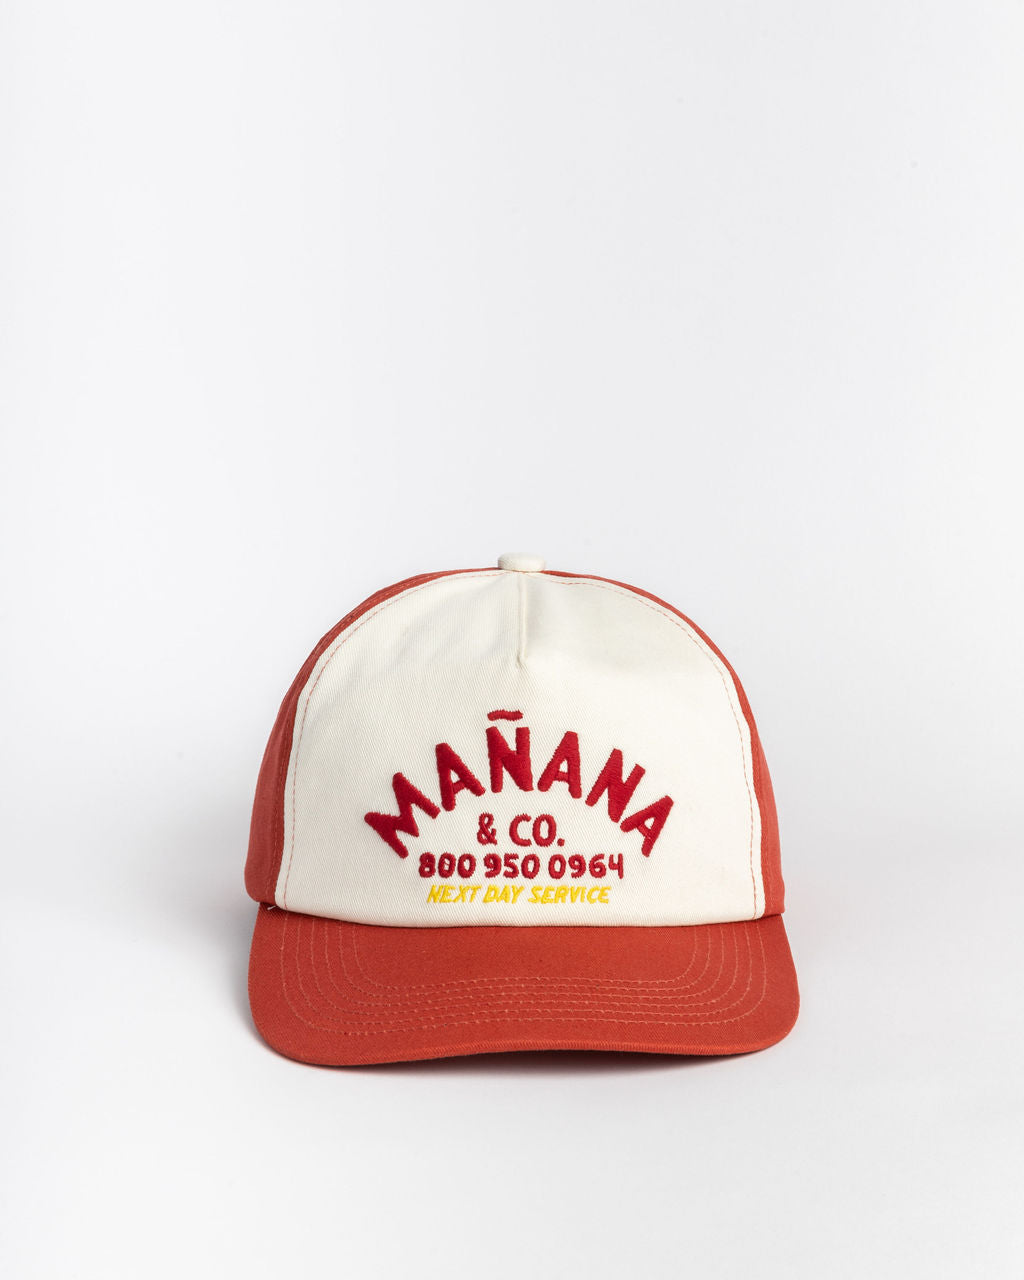 Red Shop Hat having Manana branding